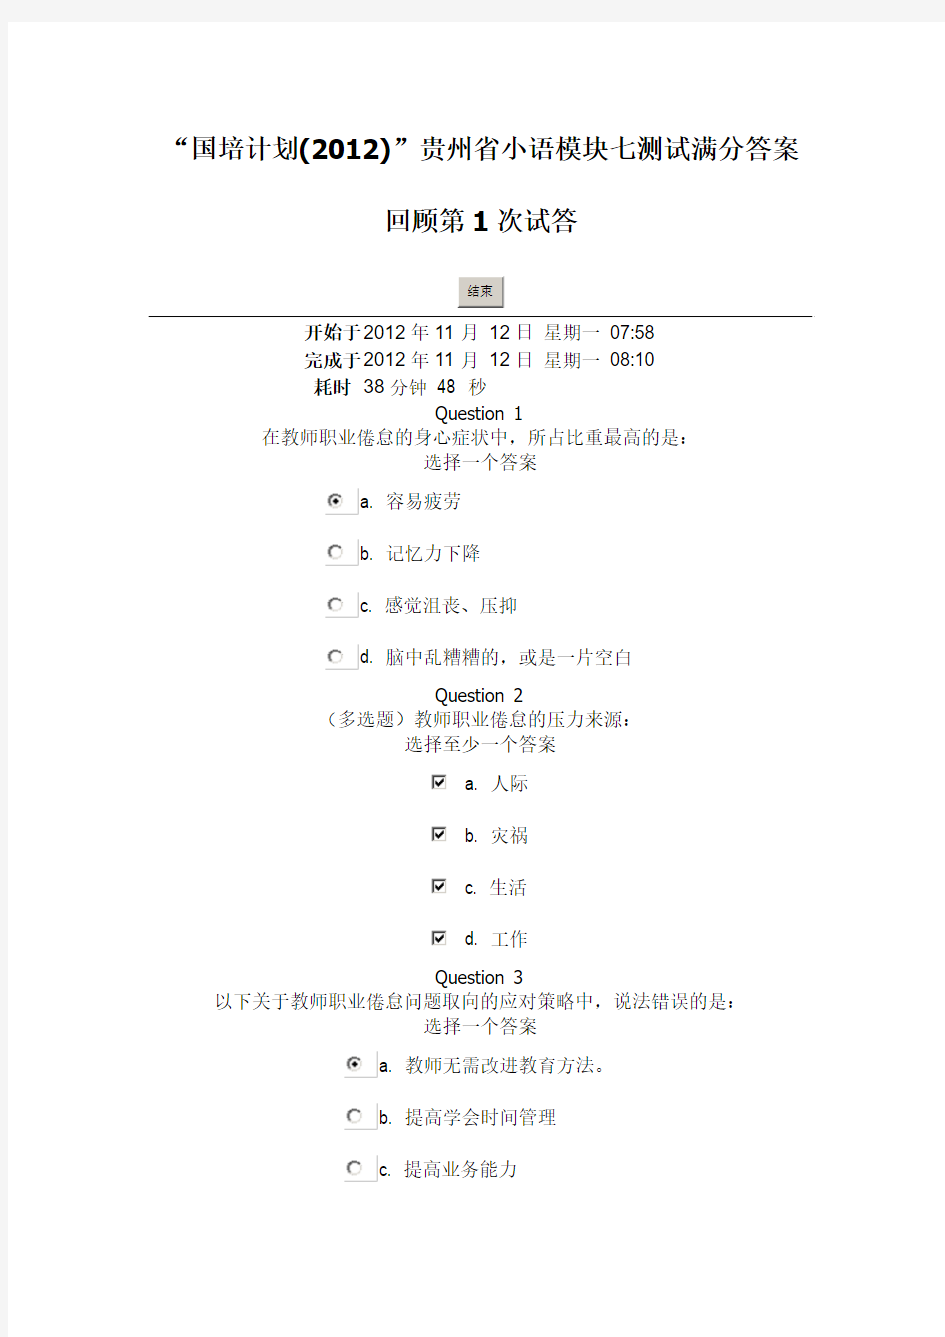 “国培计划(2012)”贵州省小语模块七测试满分答案